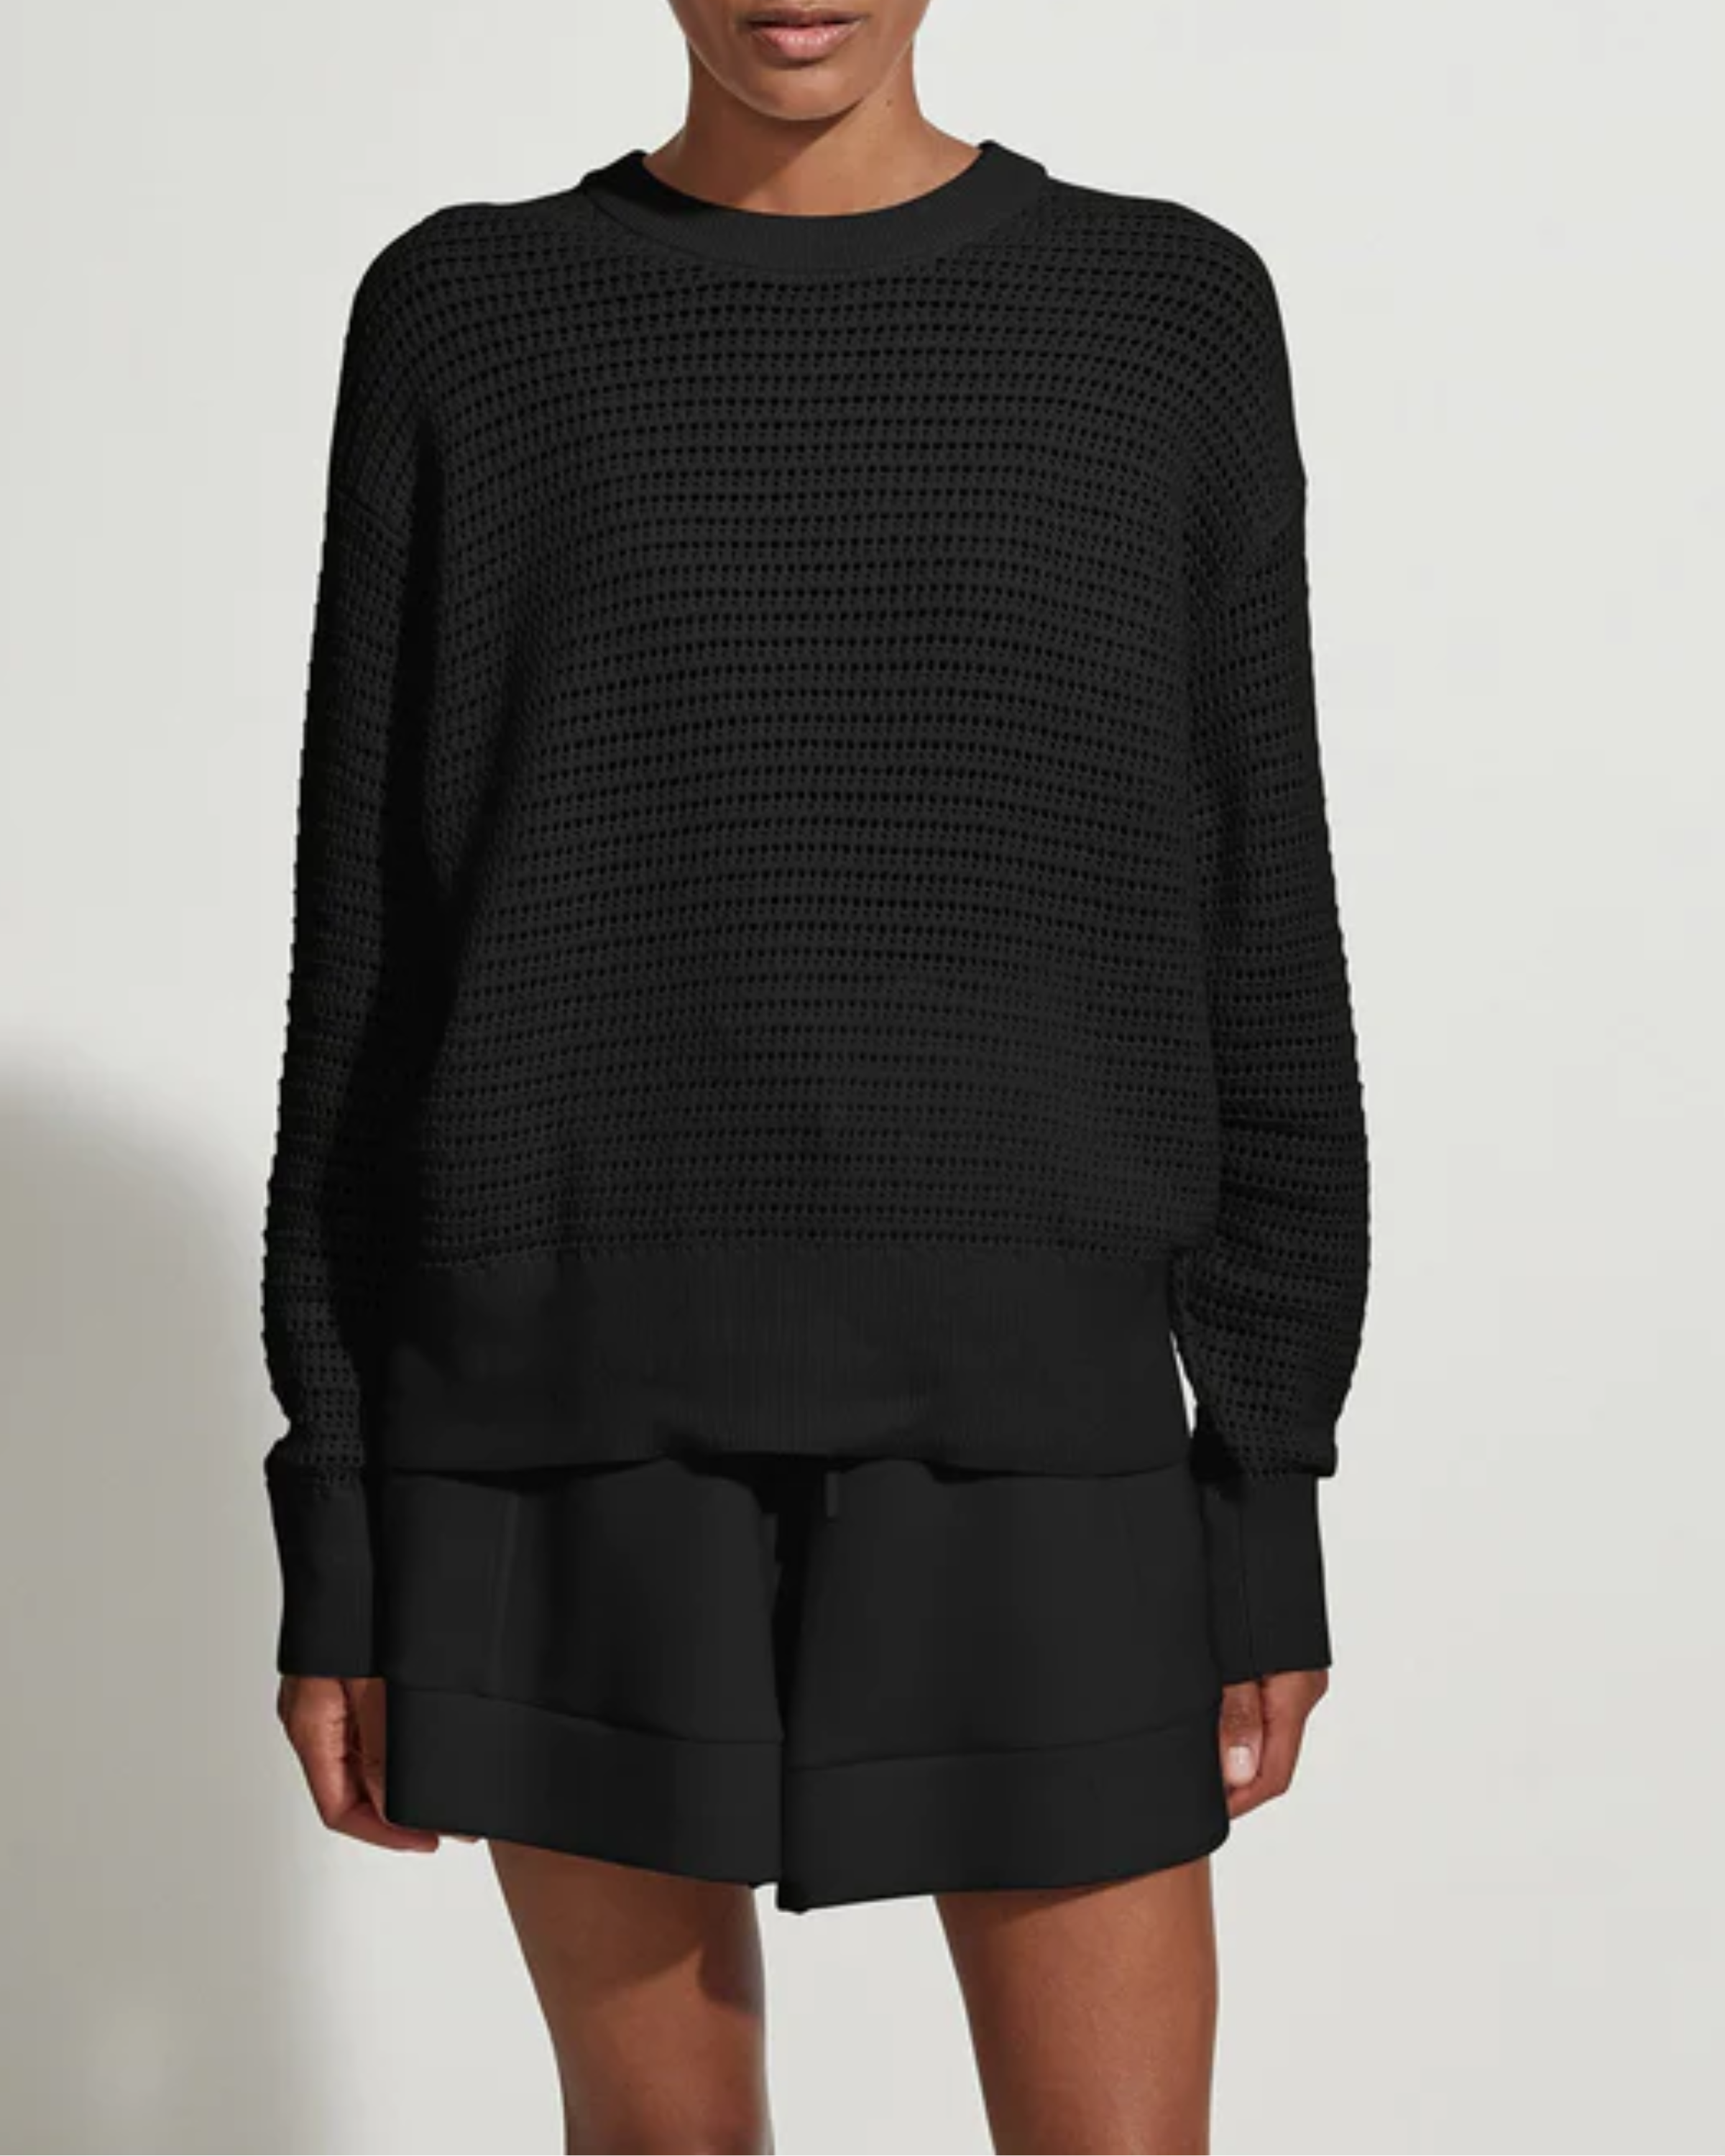 Varley Kershaw Sweatshirt in Black